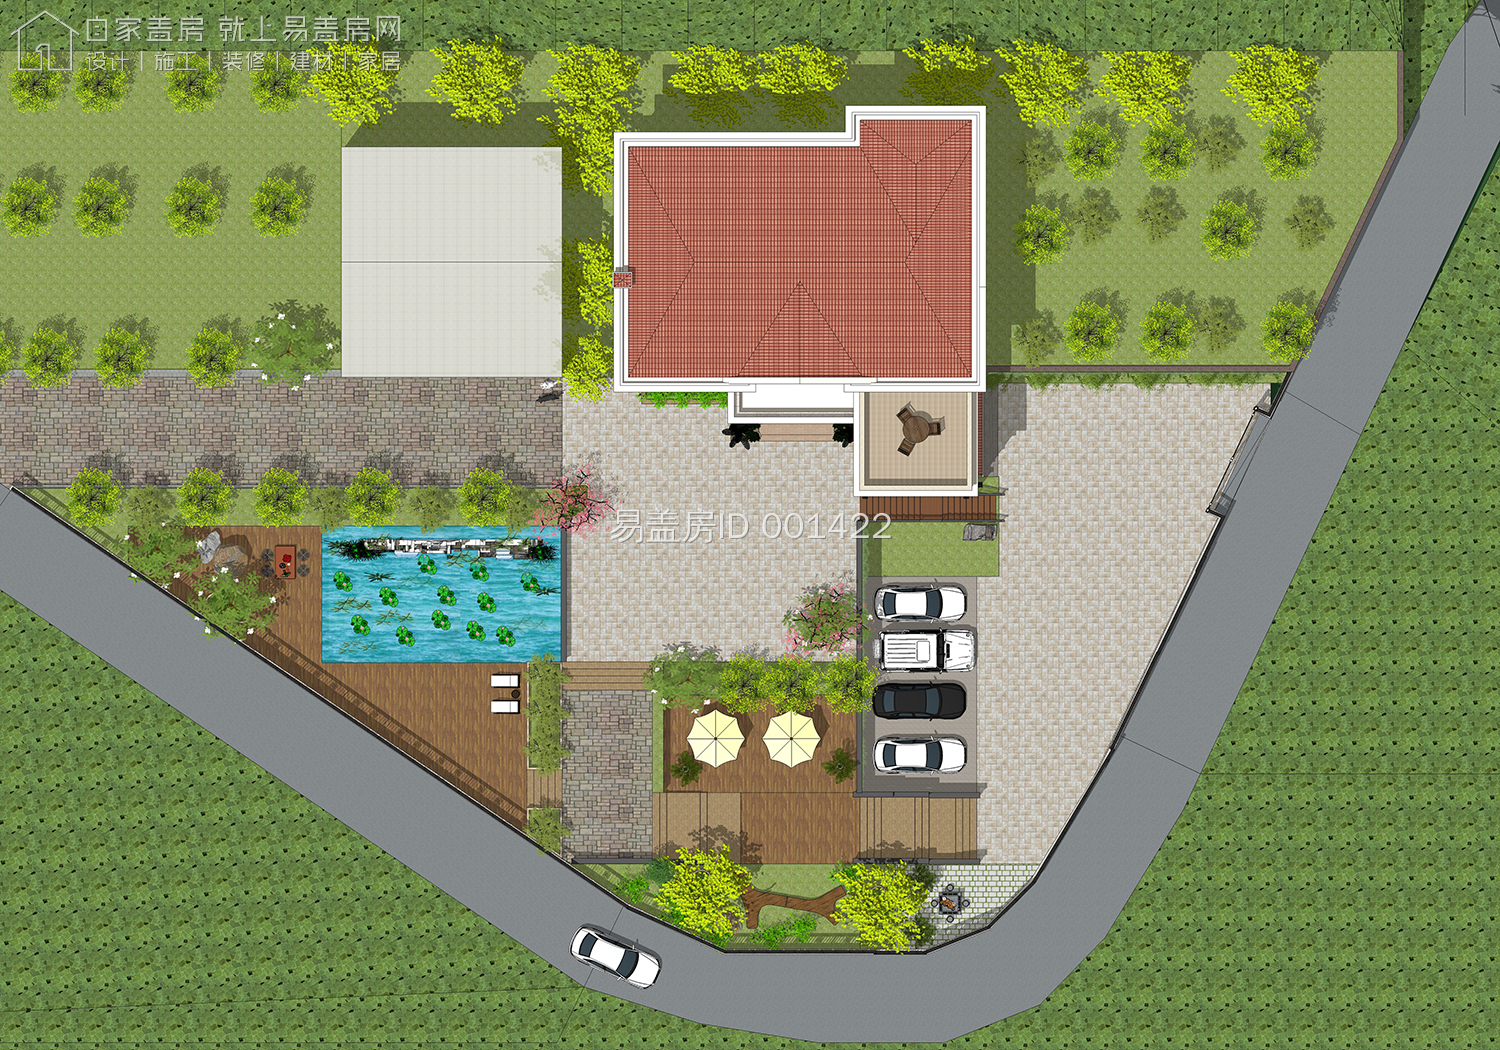 QH2030欧式二层两开间小户型农村盖房图纸二层简约农村自建别墅设计图 - 青禾乡墅科技